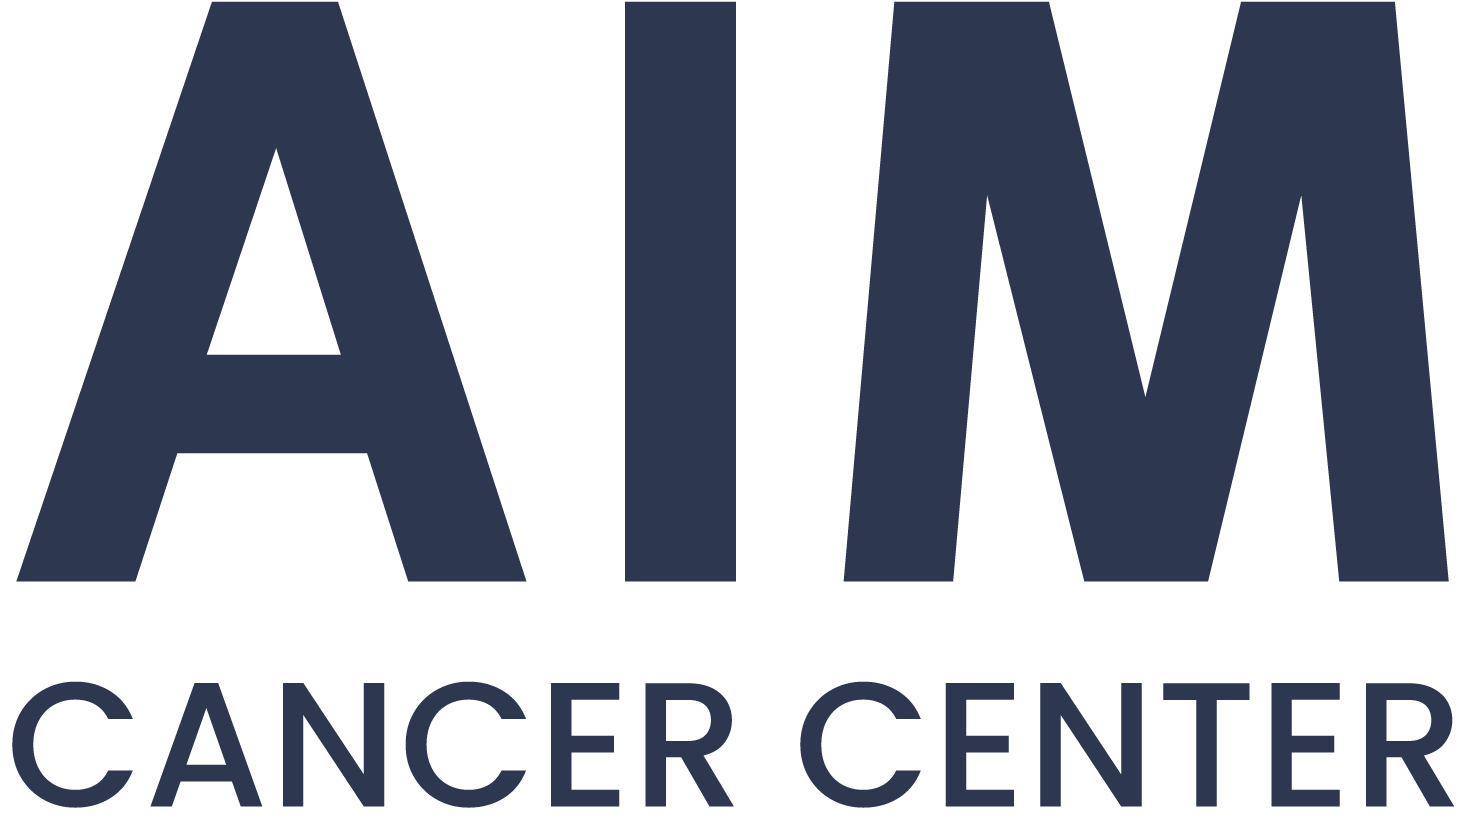 aim cancer centeroriginal Home Page